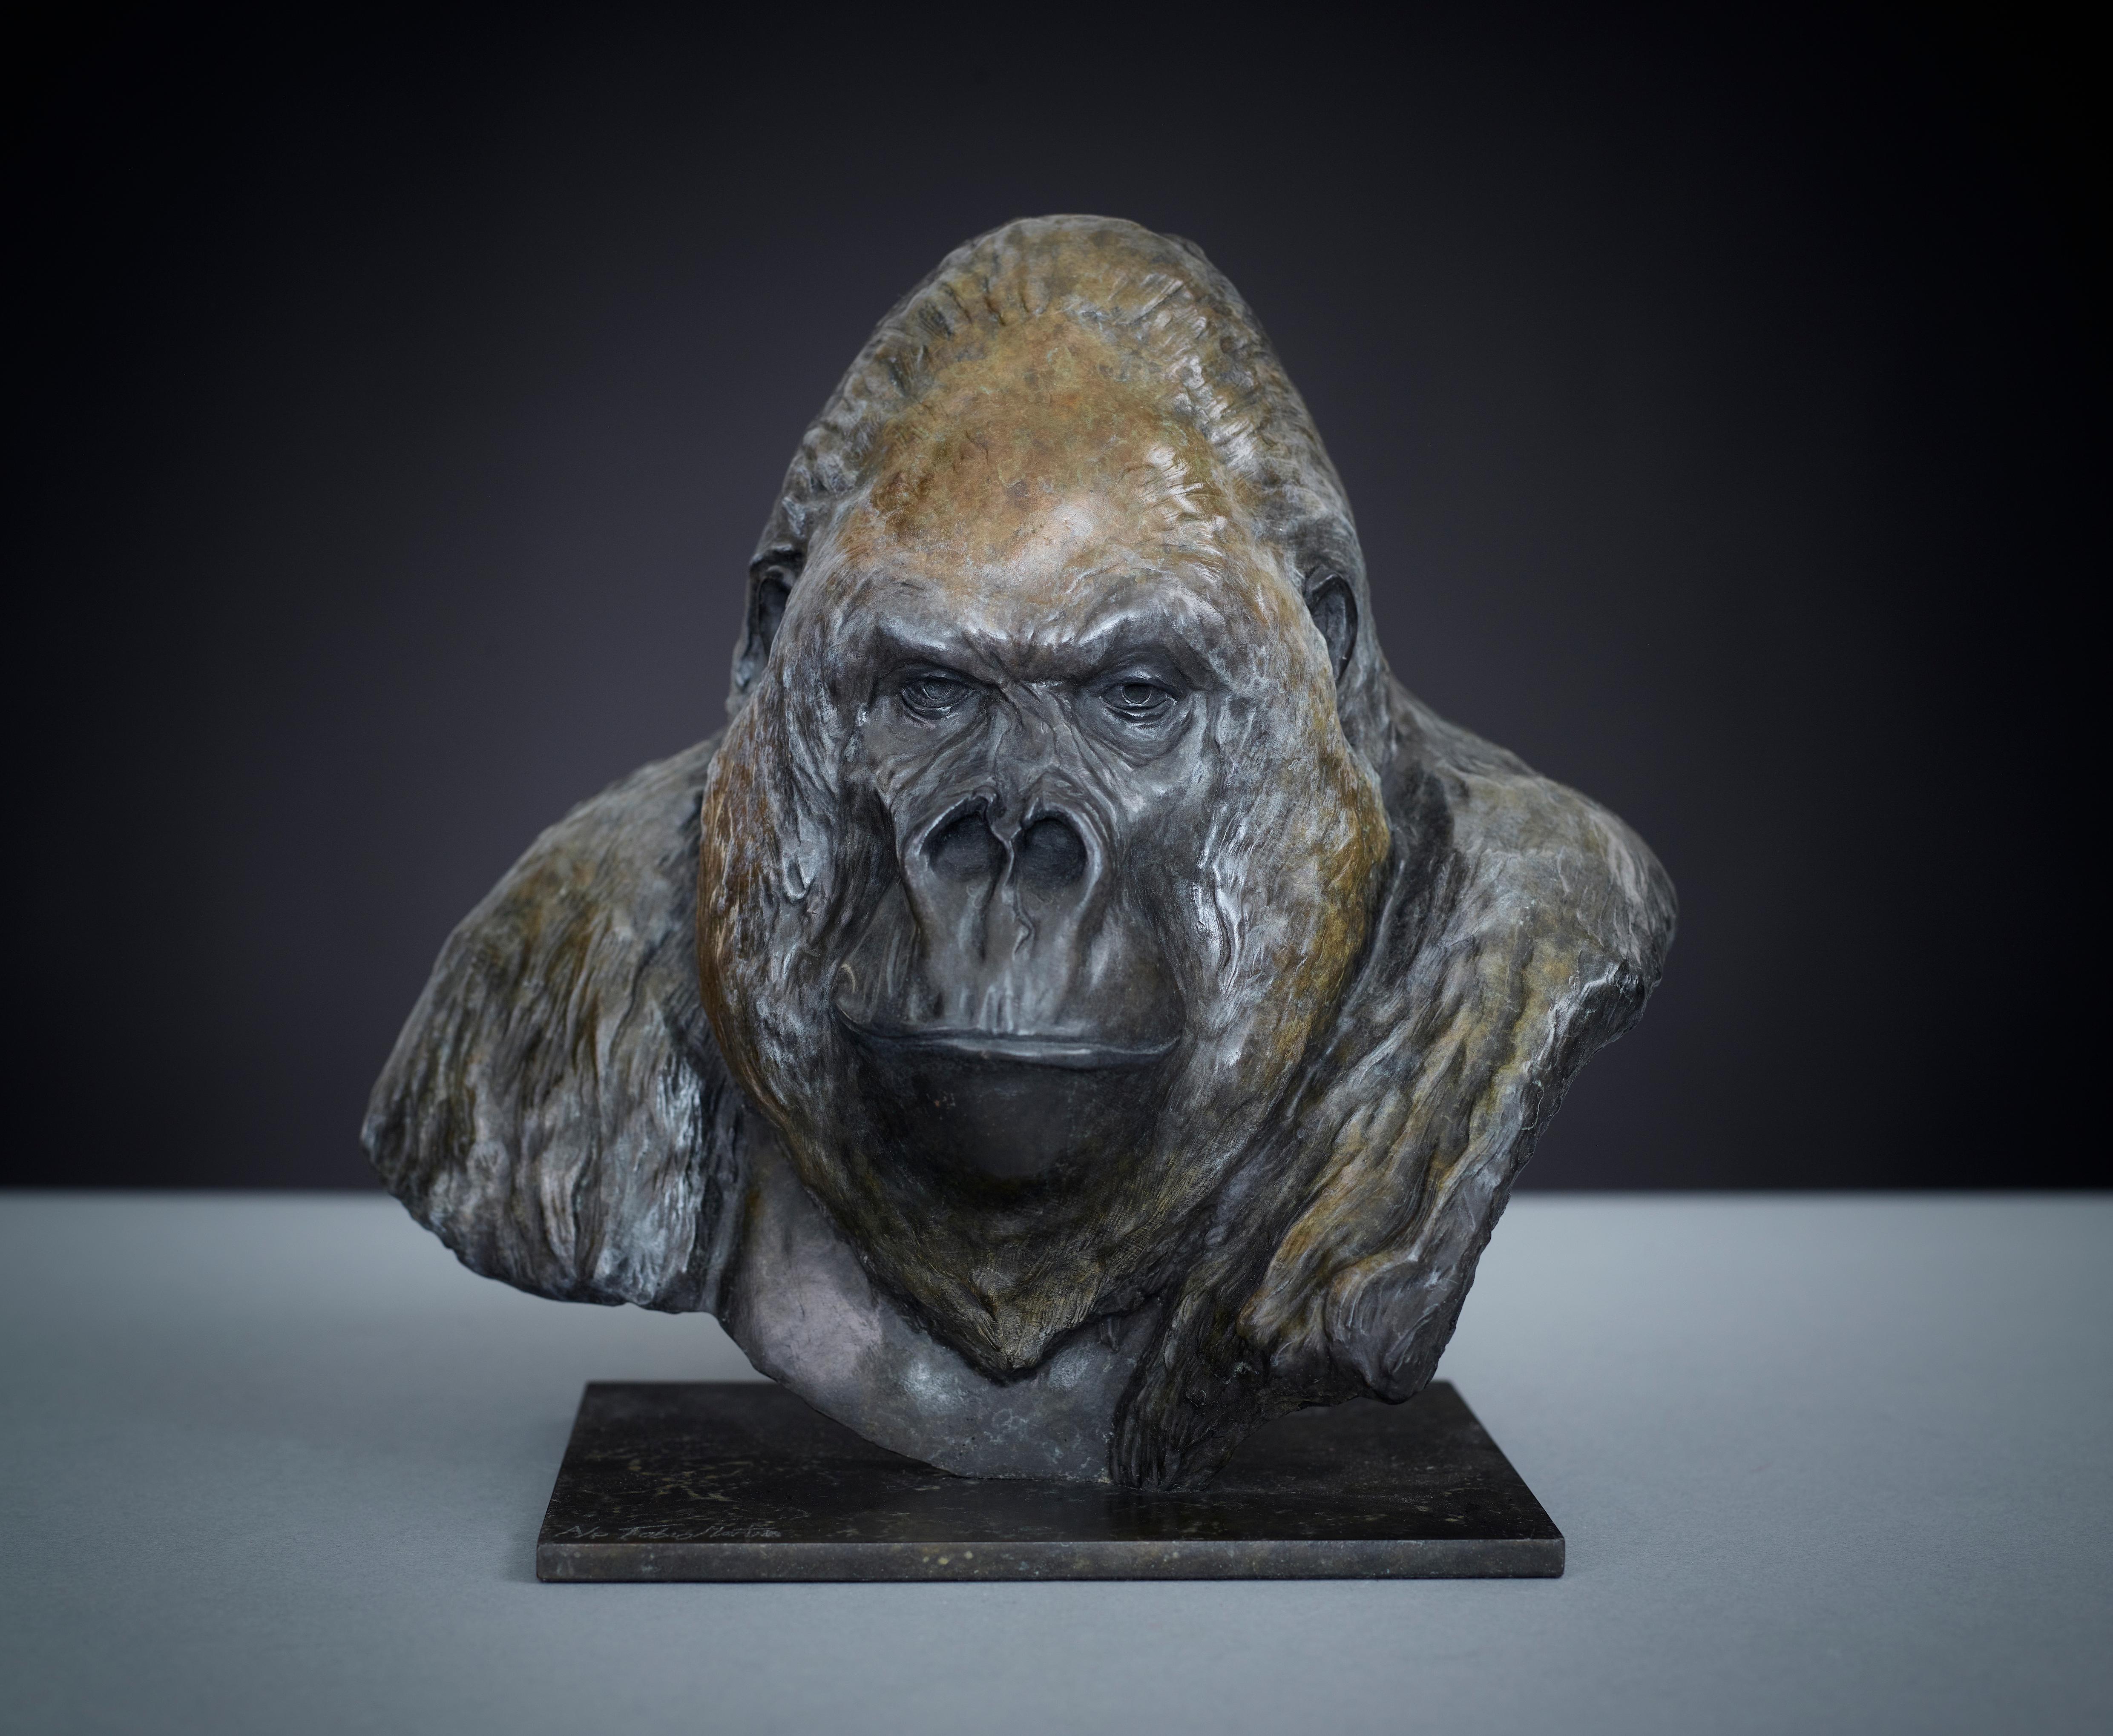 Zeitgenössische Wildleben-Bronze-Skulptur einer Gorille 'Nico Jnr' von Tobias Martin